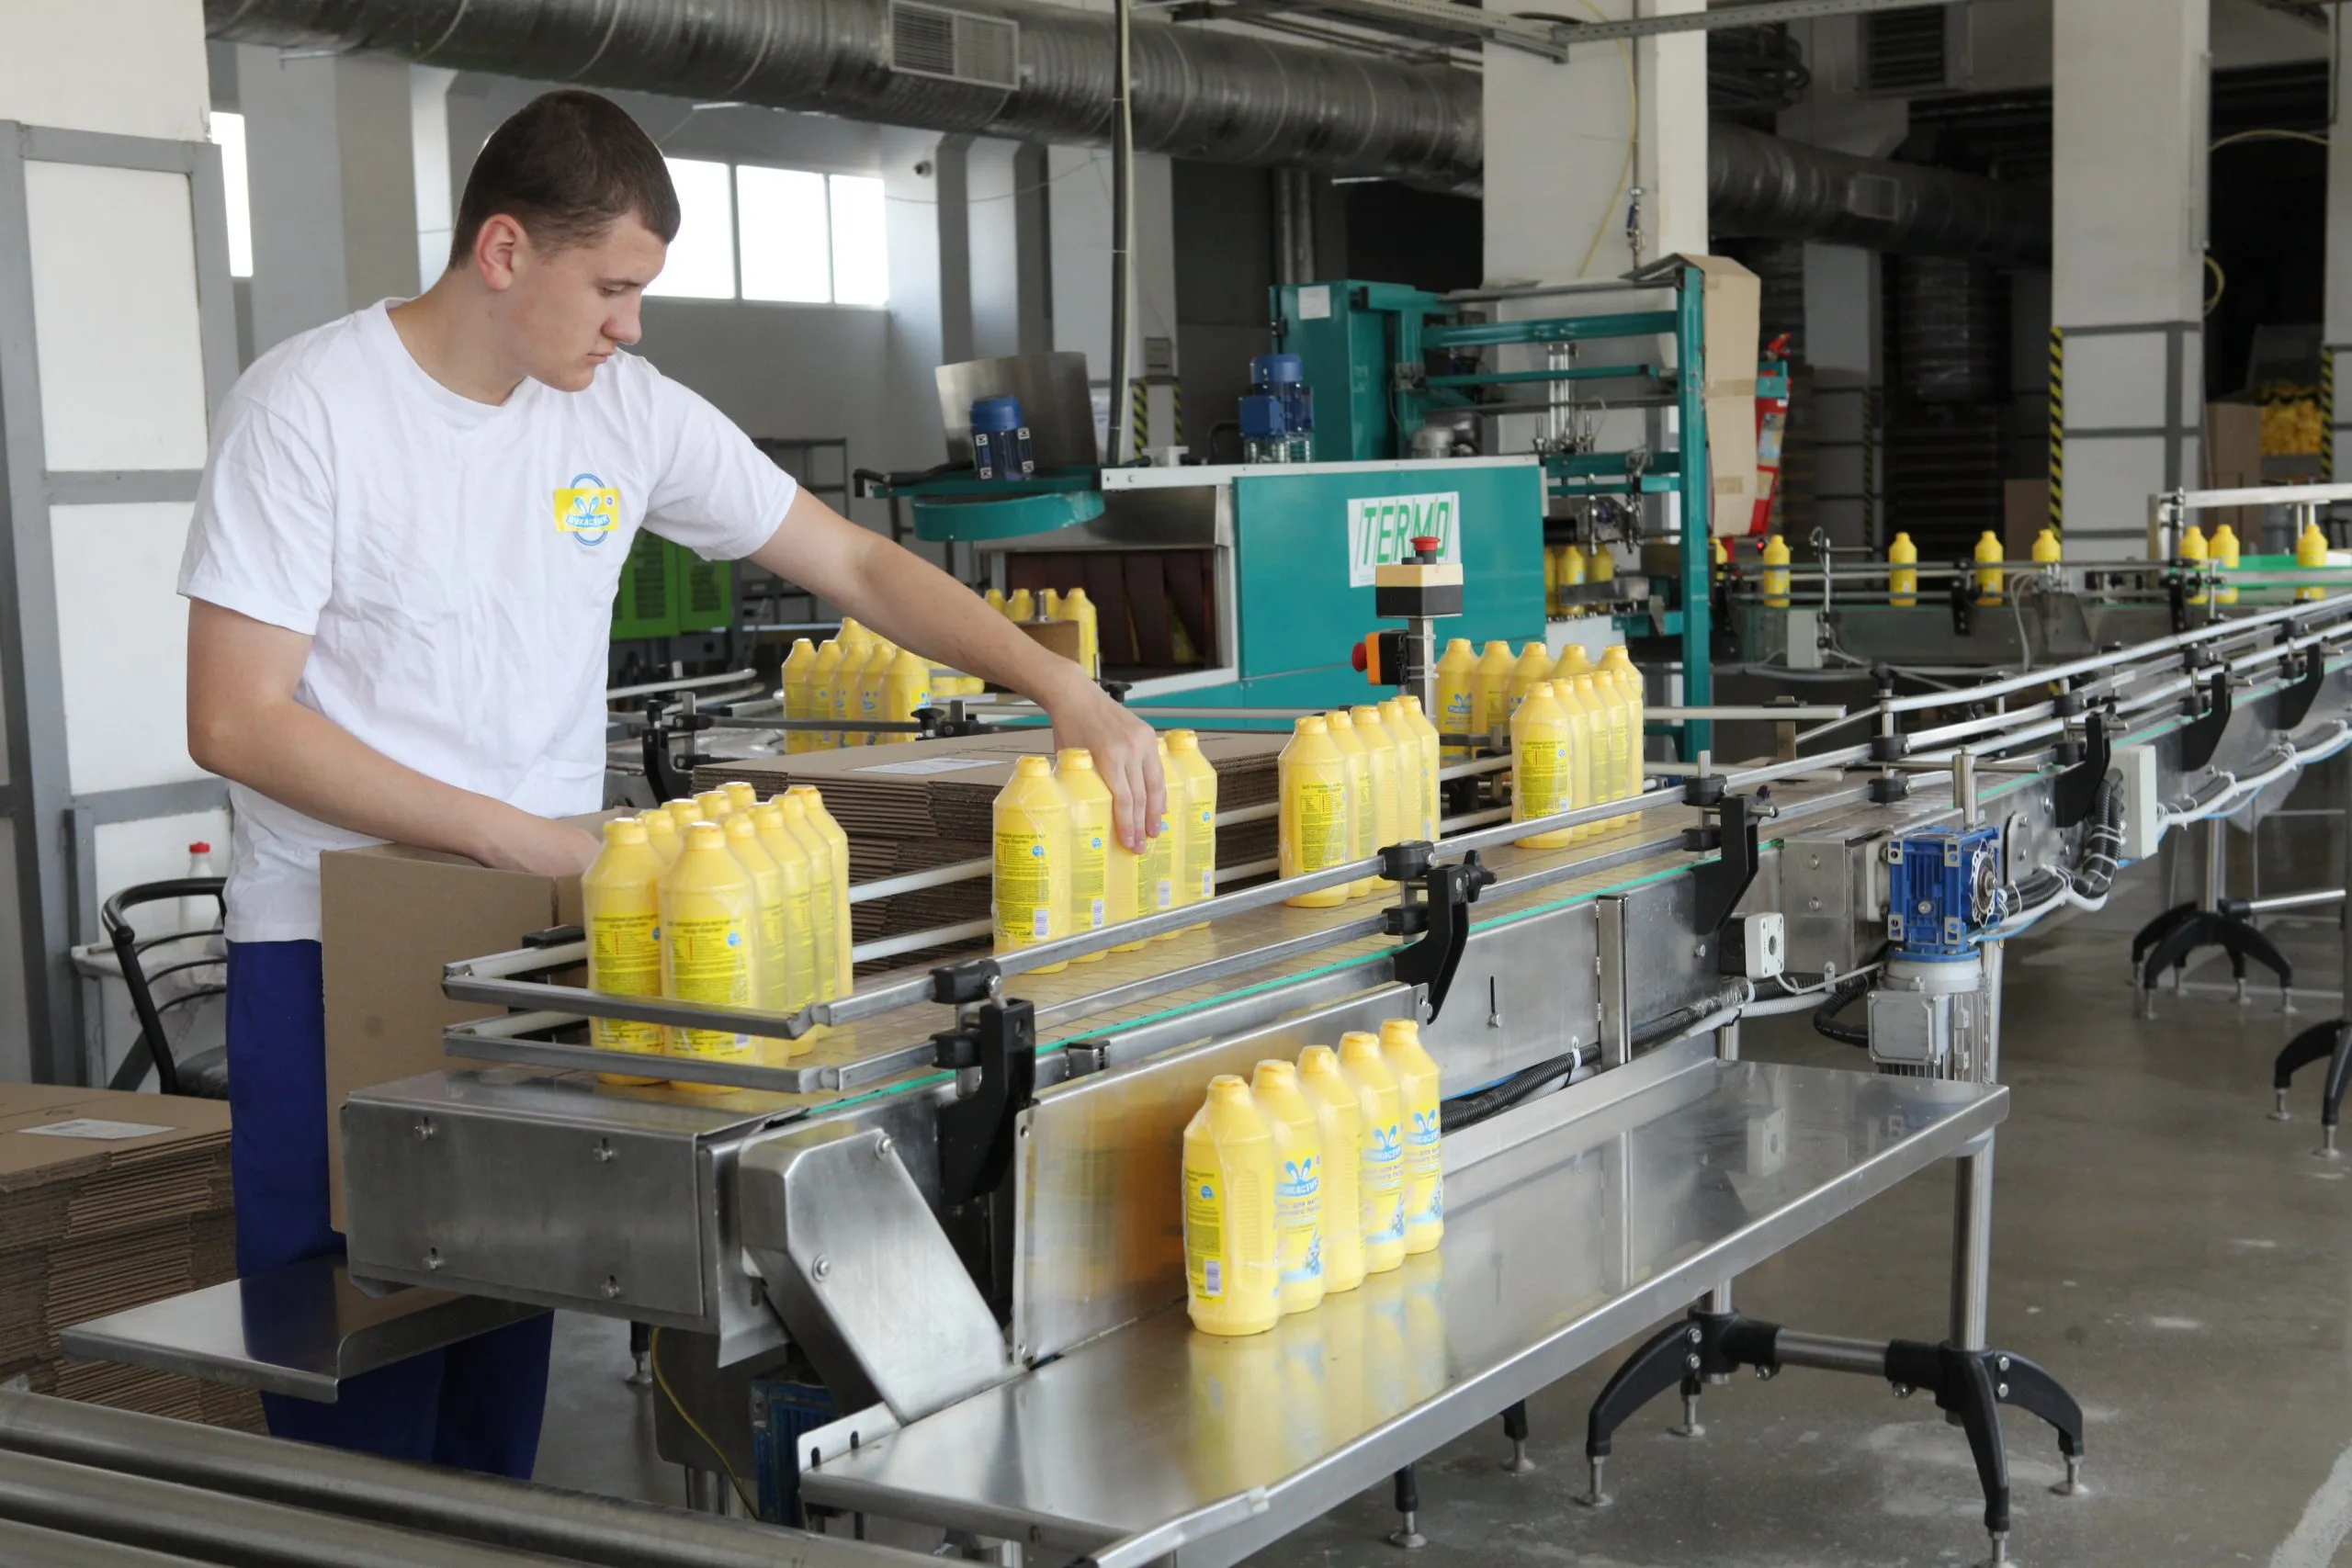 Запуск масштабного виробництва: після півторарічної перерви  “Вінницяпобутхім” відновить роботу